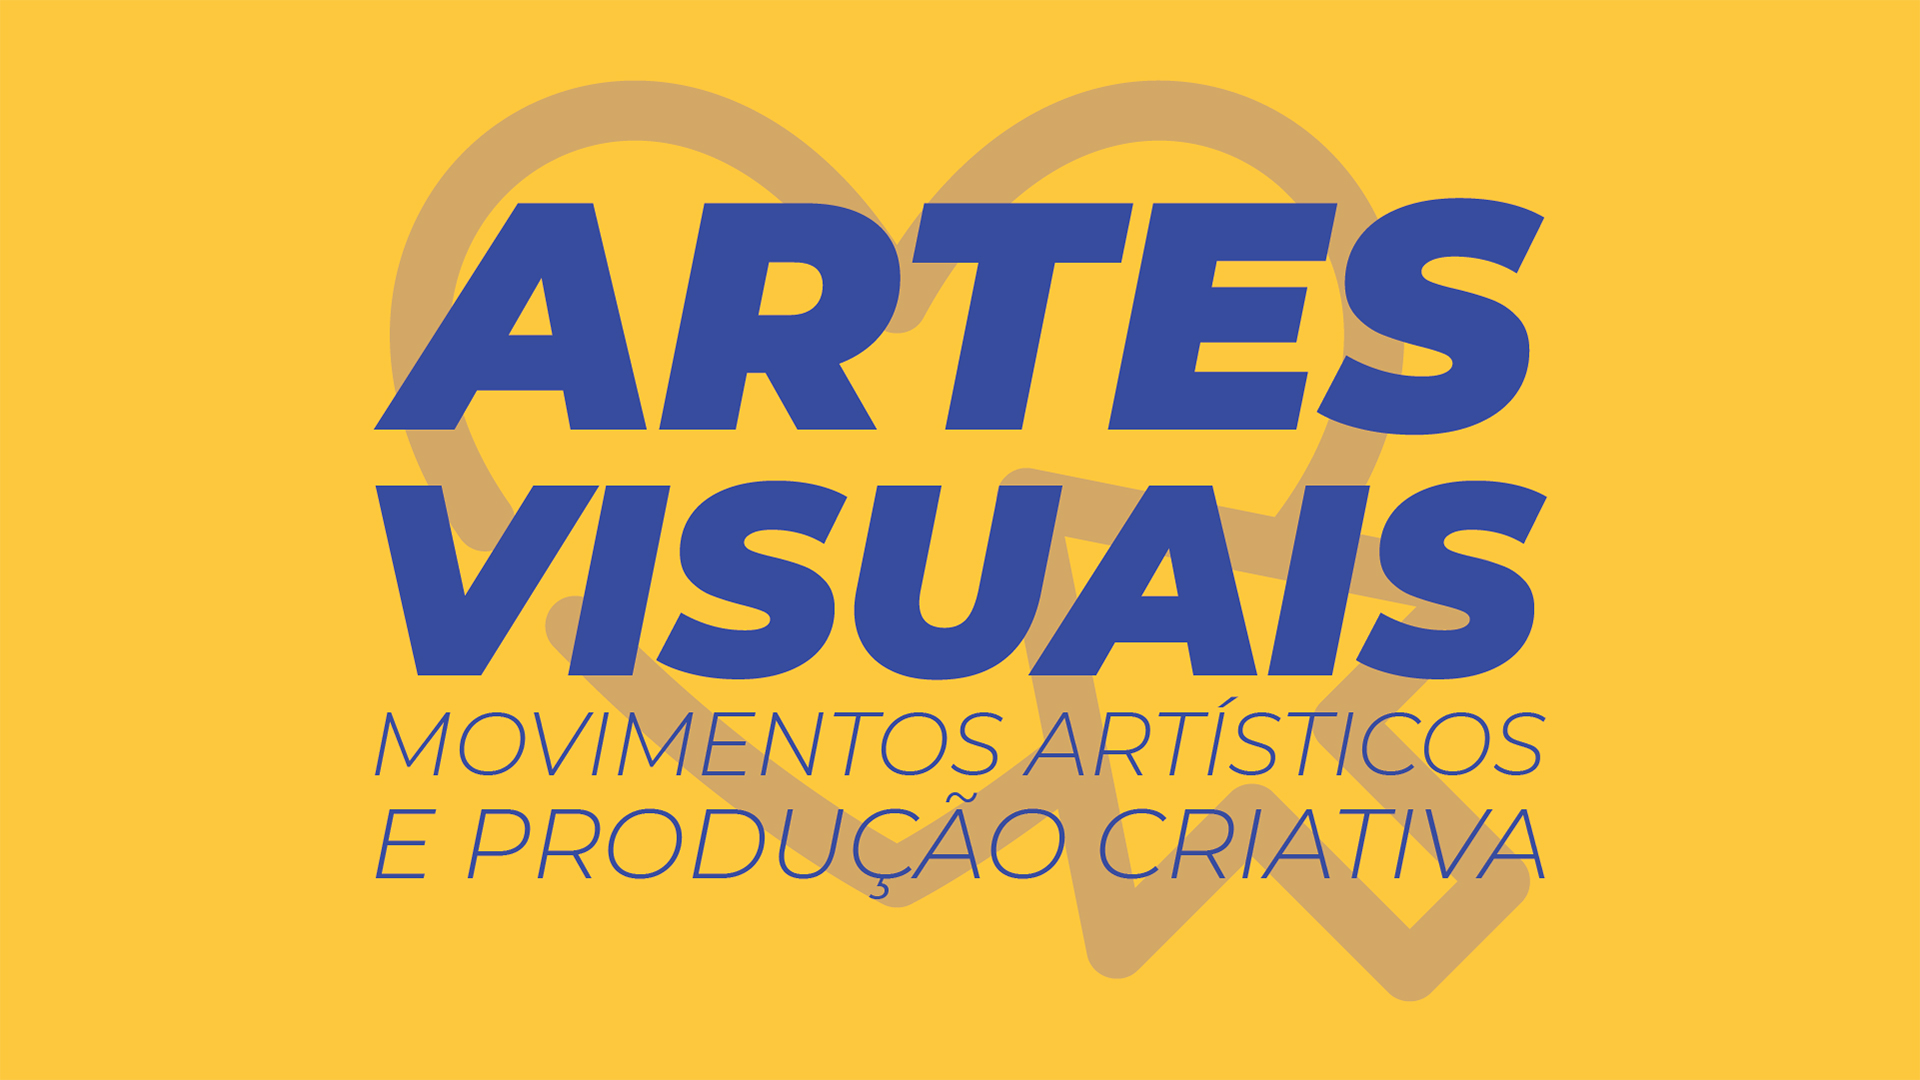  Artes Visuais: Movimentos Artísticos e Produção Criativa